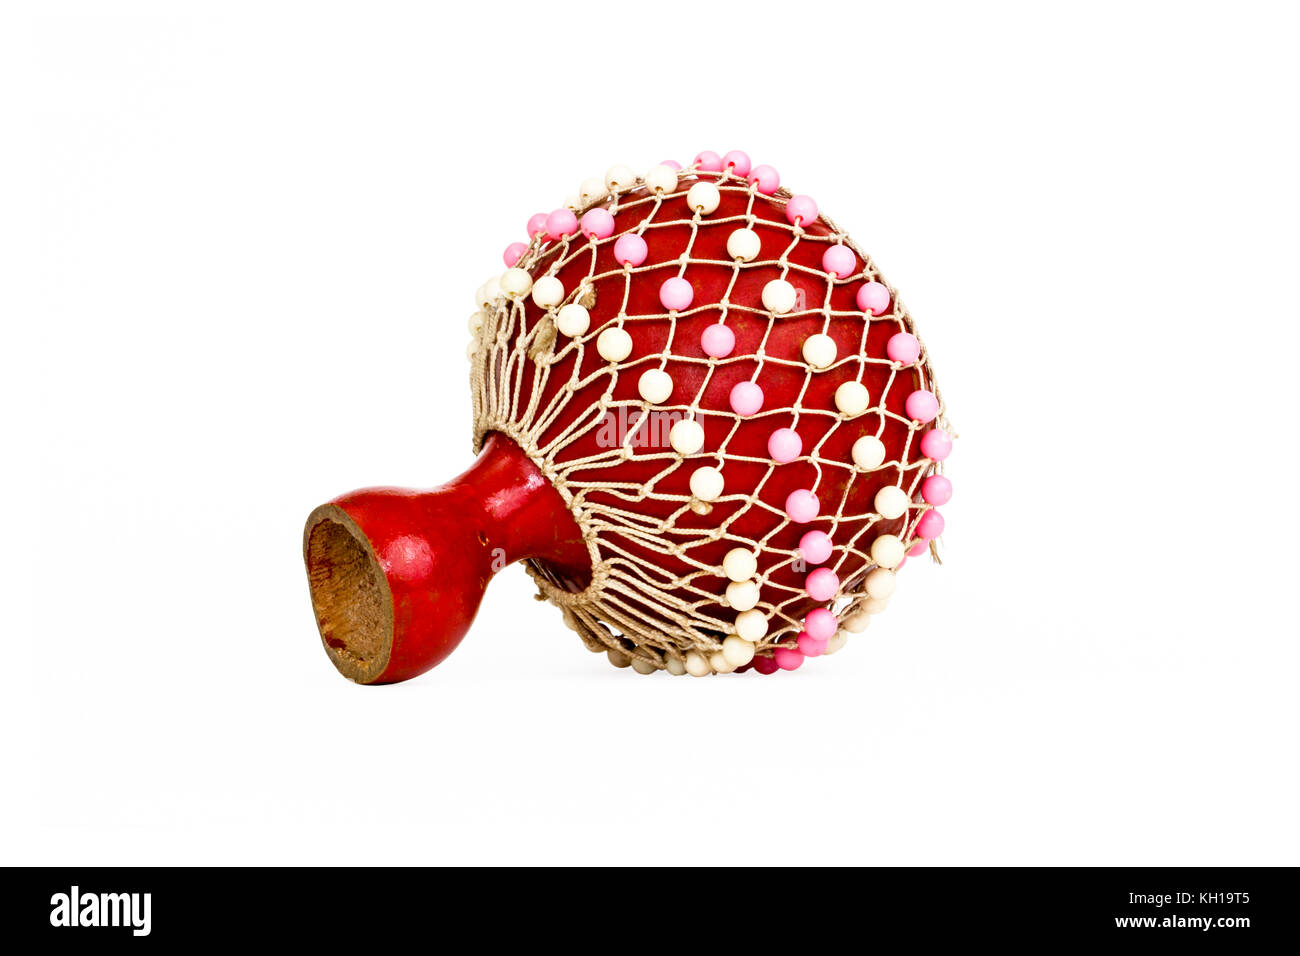 Un shaker musical traditionnel gourde orné de perles rouges, isolé sur fond blanc Banque D'Images